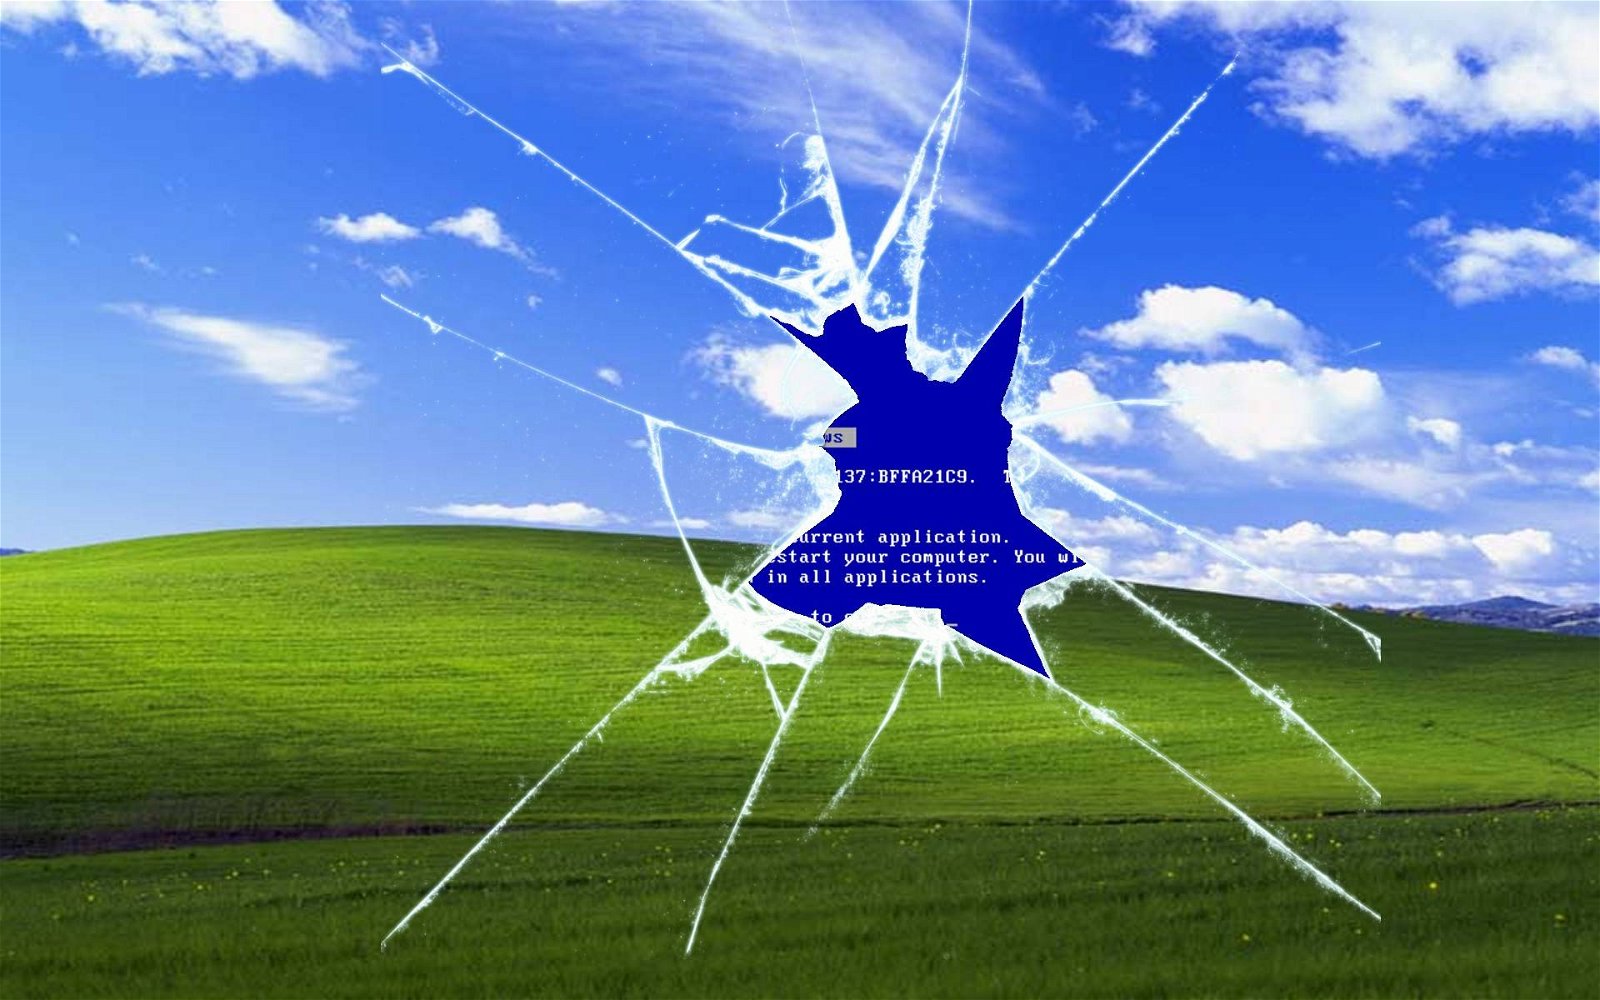 Immagine di Windows XP, codice sorgente pubblicato in un thread di 4chan